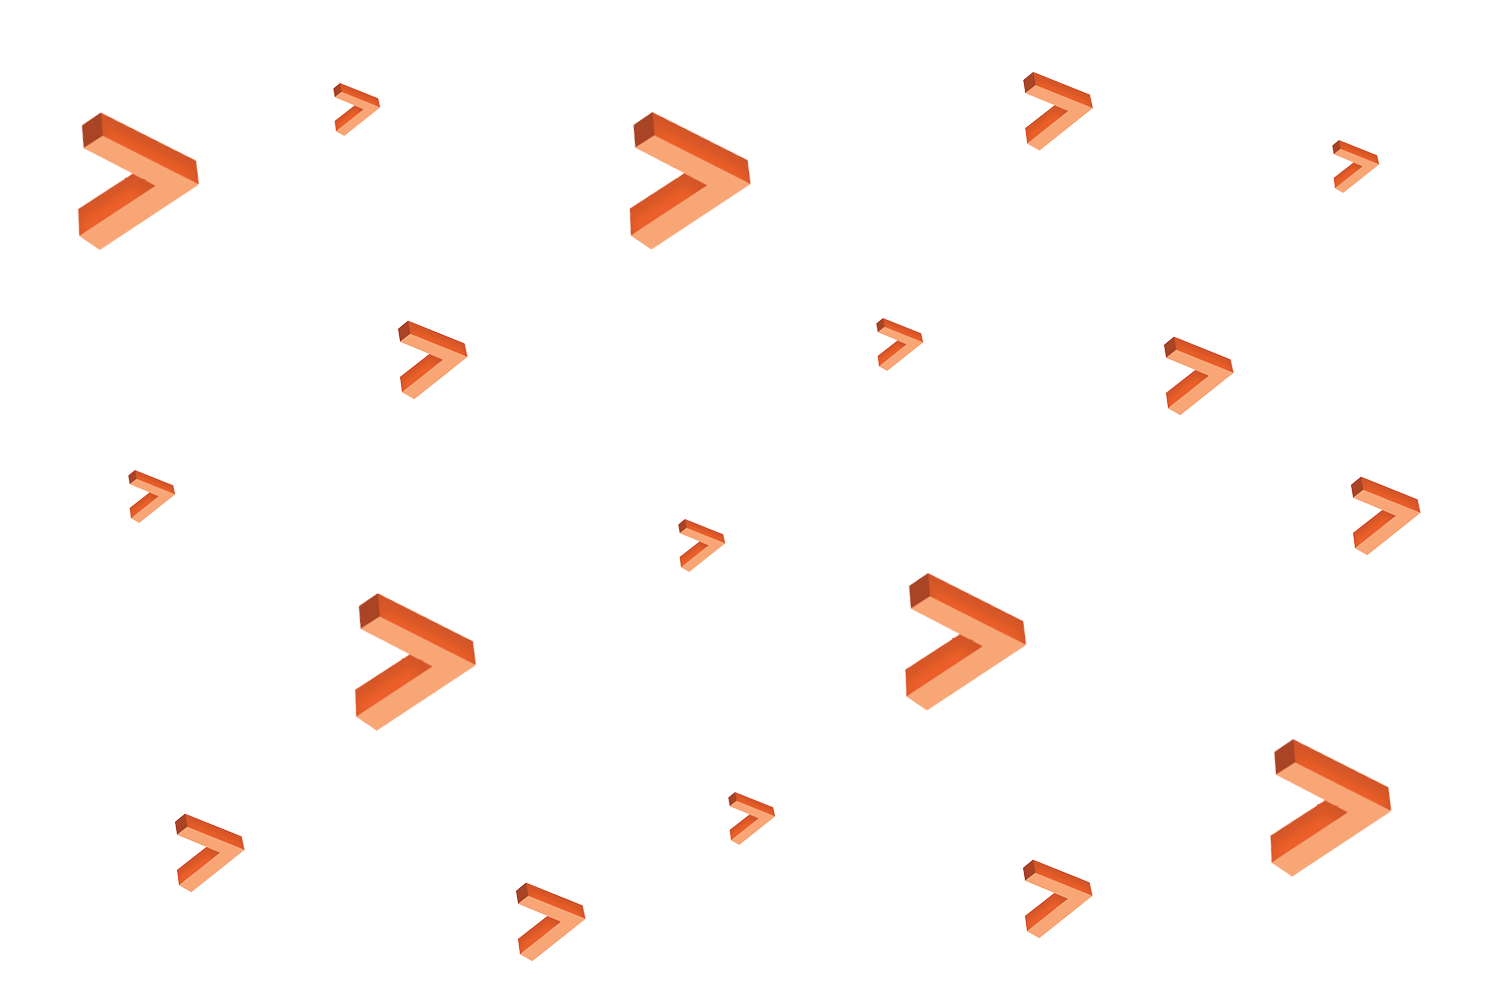 Overlay 3d carrot shapes orange